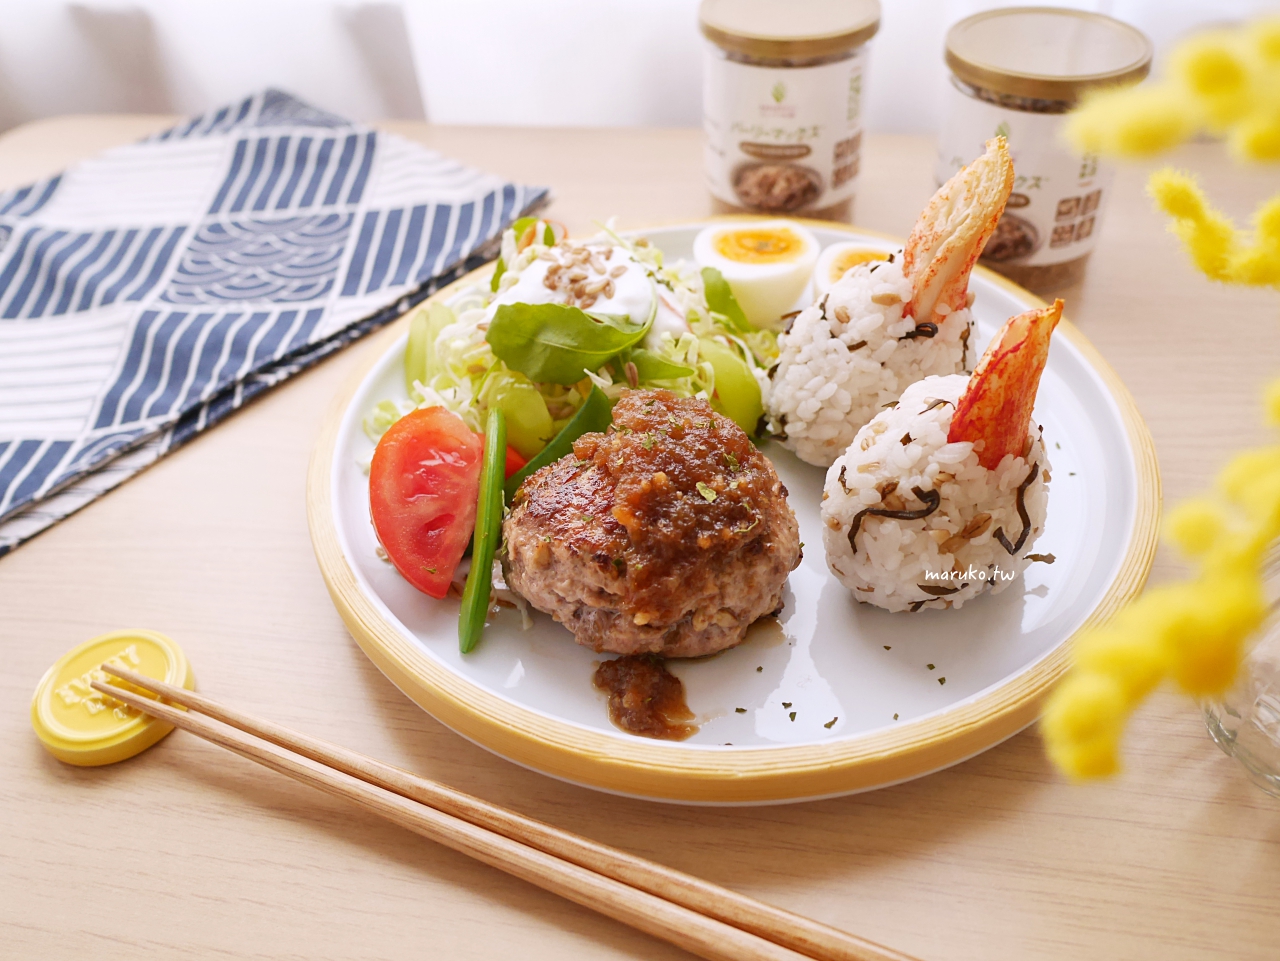 【食譜】超級大麥 三個風靡日本天然穀物食譜運用做法分享